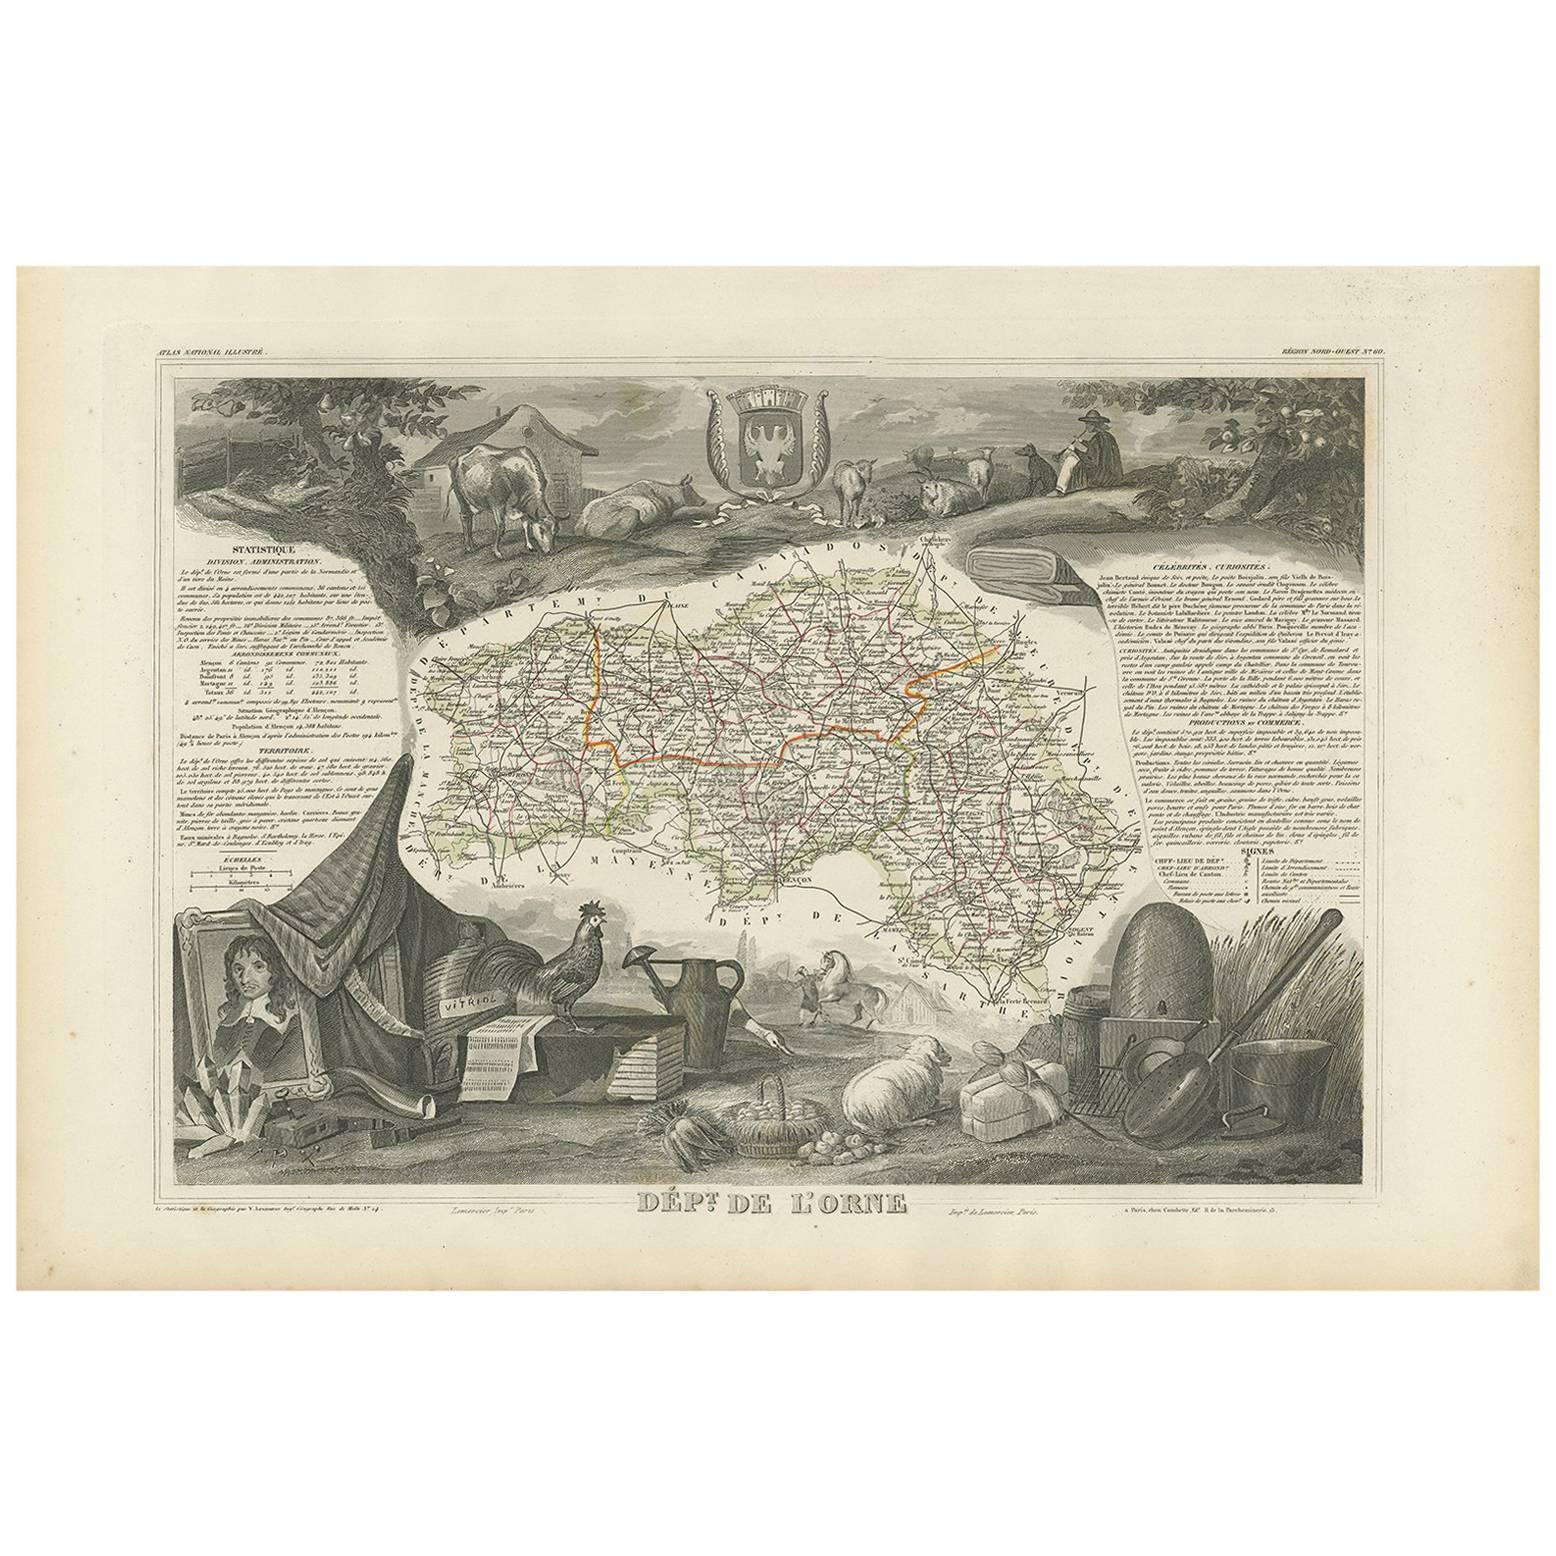 Antique Map of Orne ‘France’ by V. Levasseur, 1854